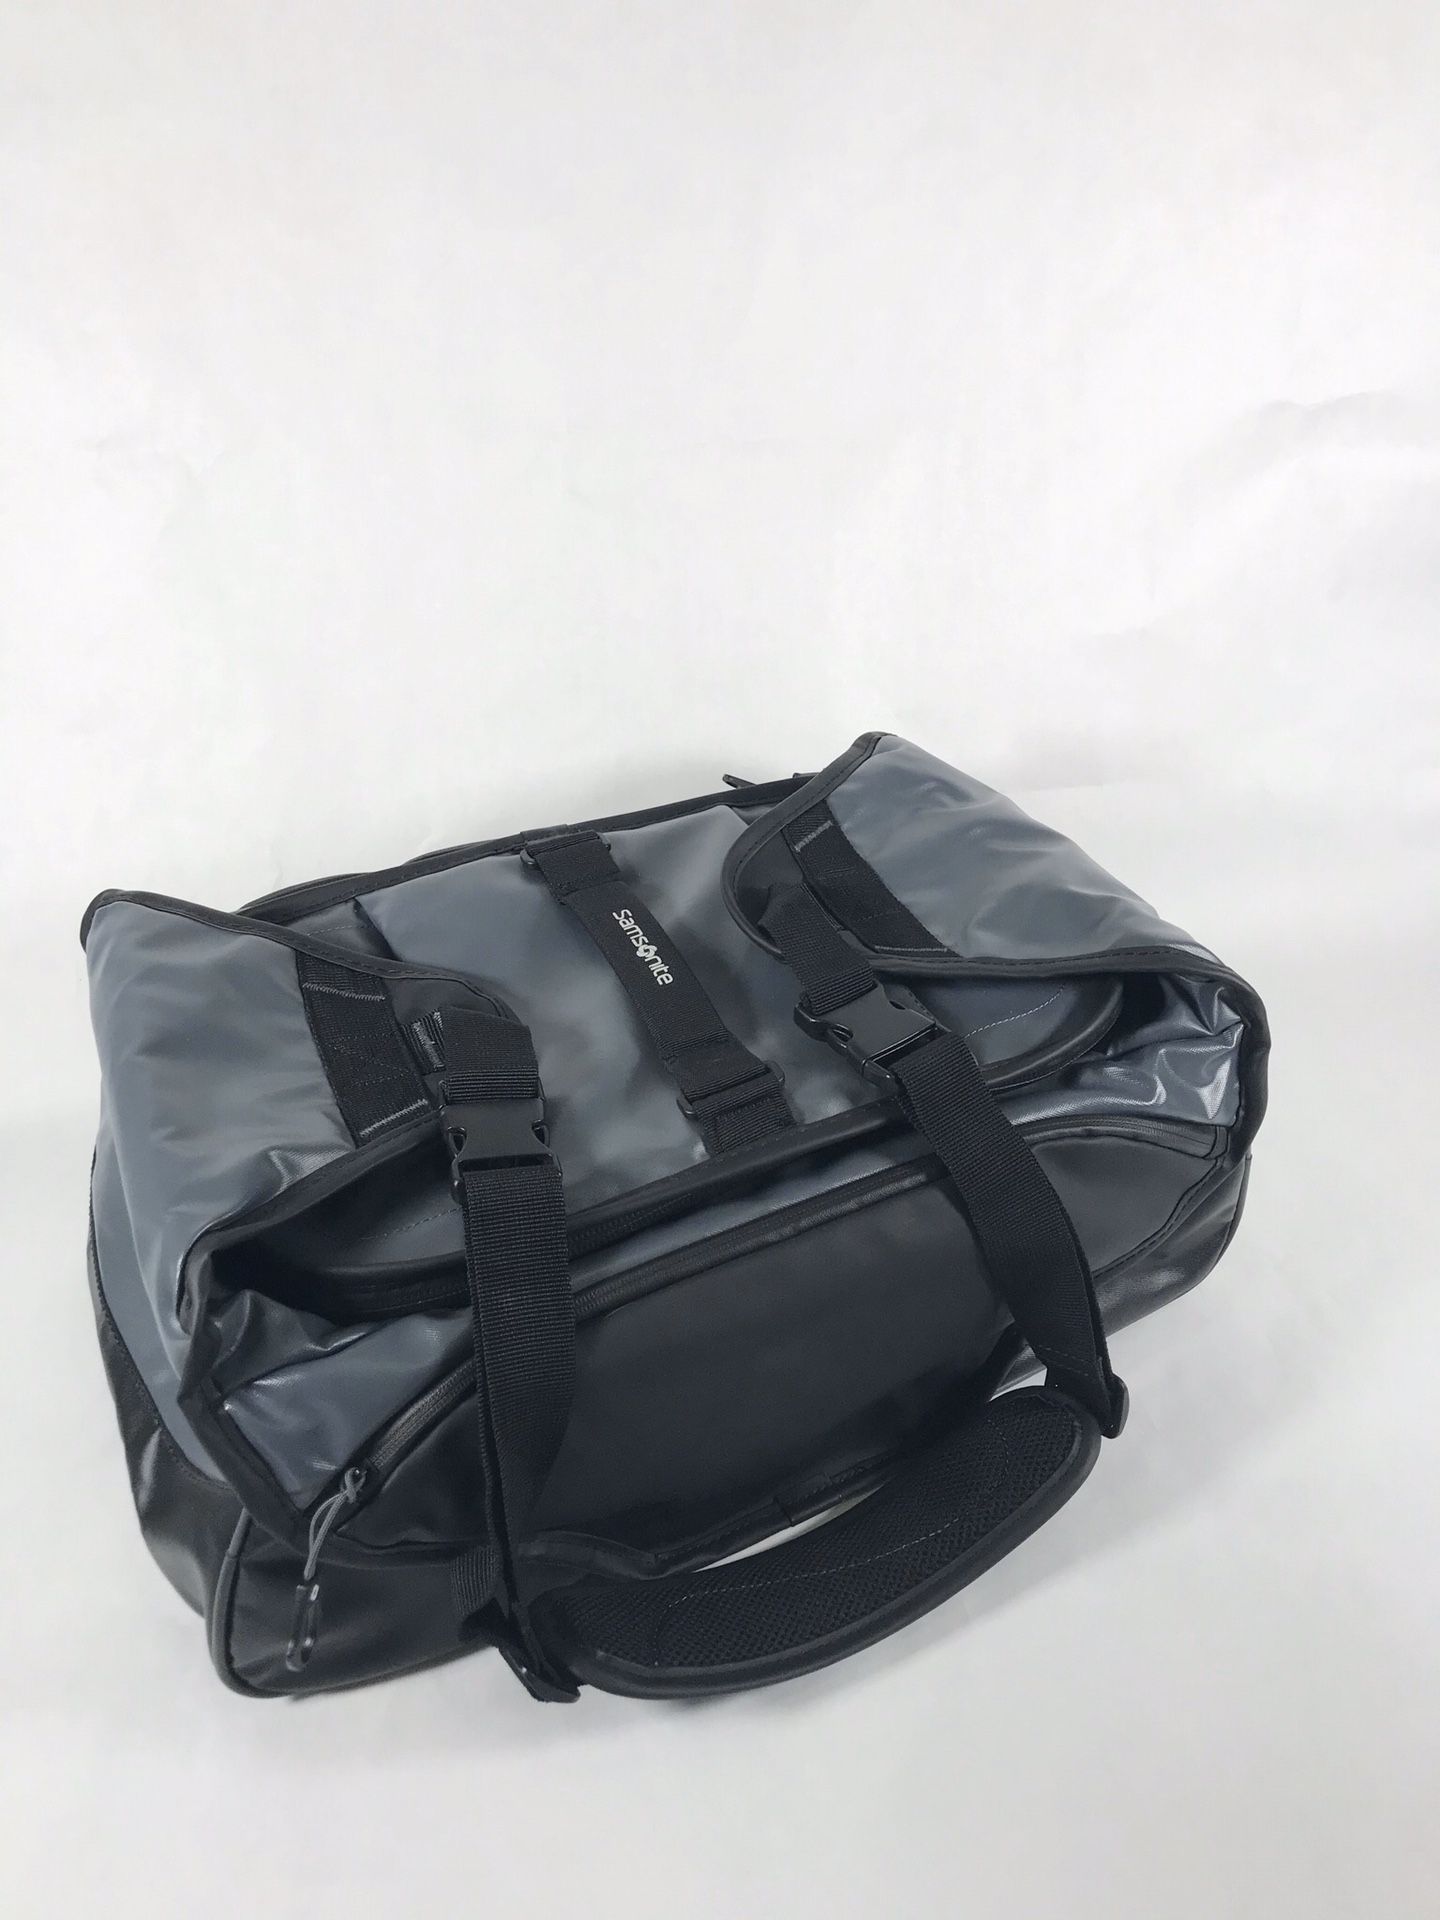 Samsonite Water Resistant Duffle Bag 27" Duffel Bag Gray Packable Lightweight Carry-On Weekend Travel Gym Bag